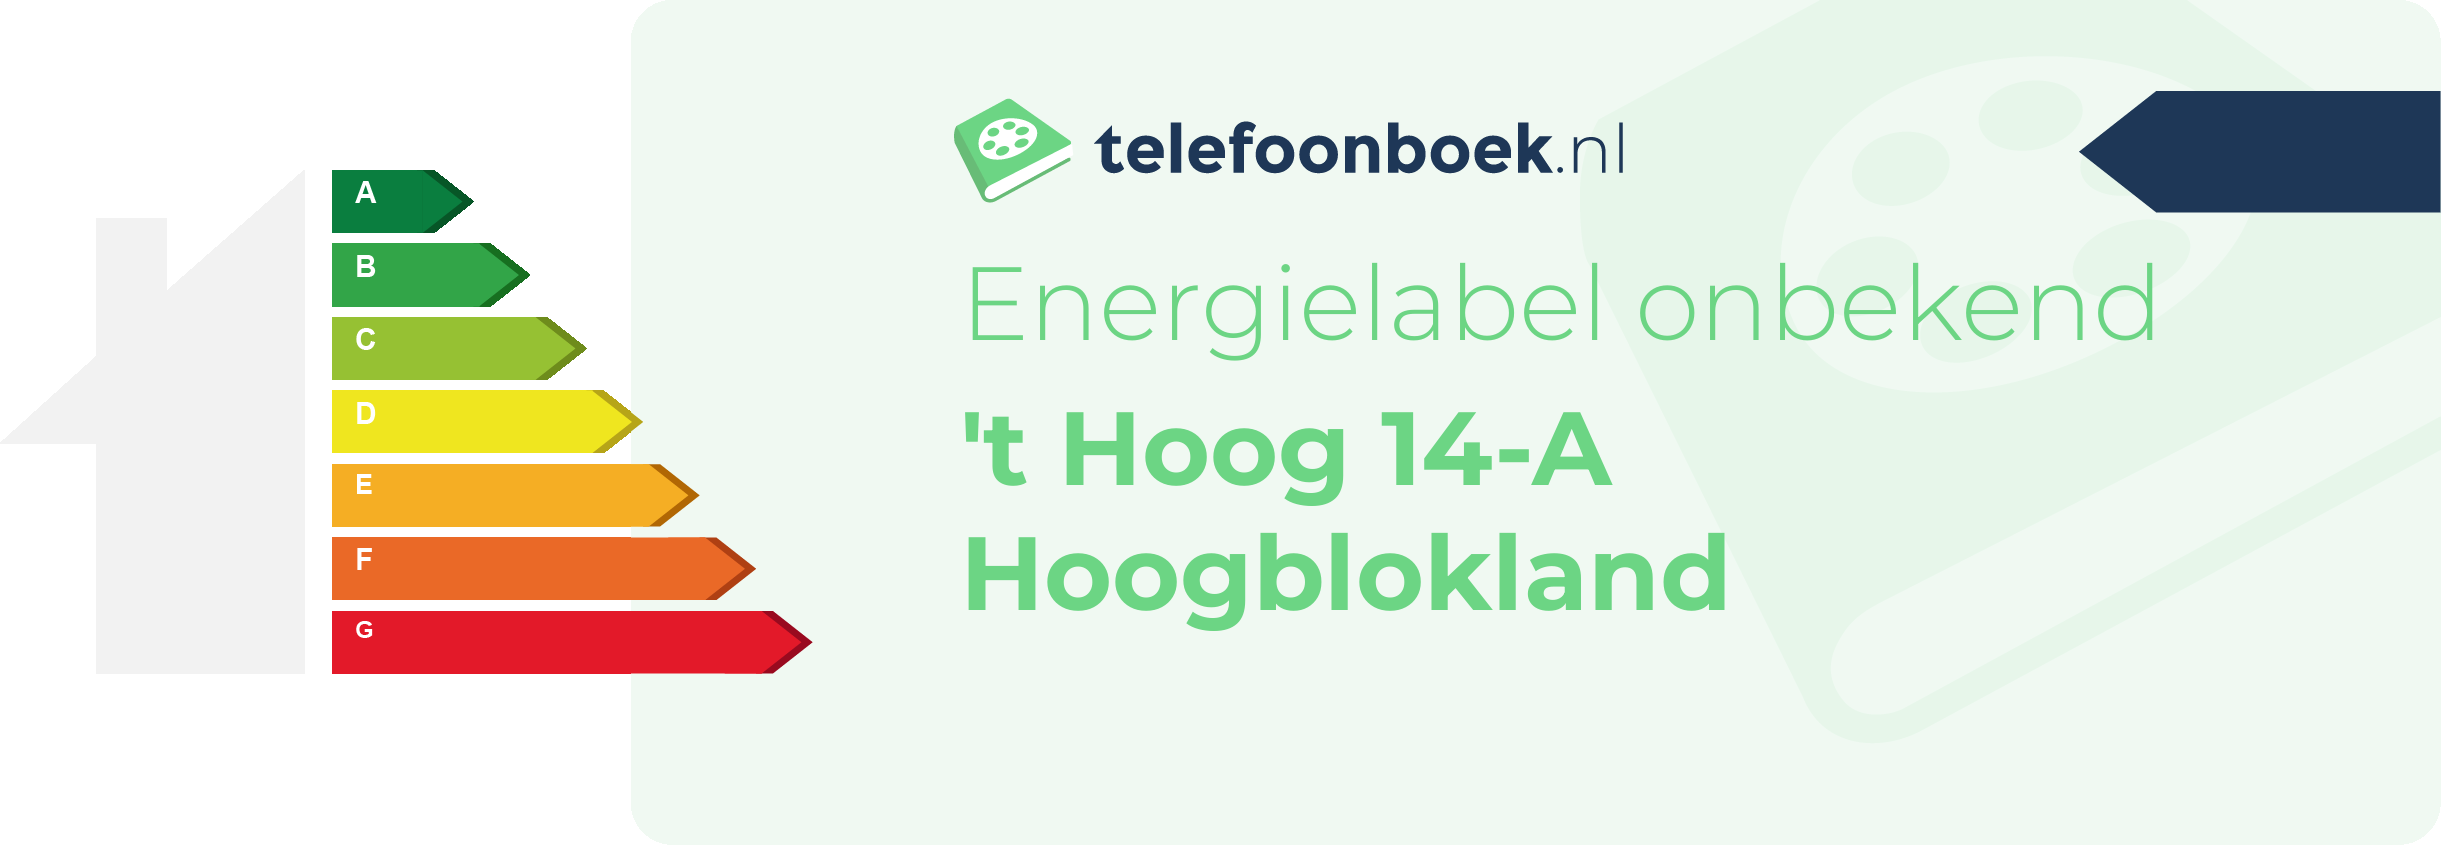 Energielabel 't Hoog 14-A Hoogblokland